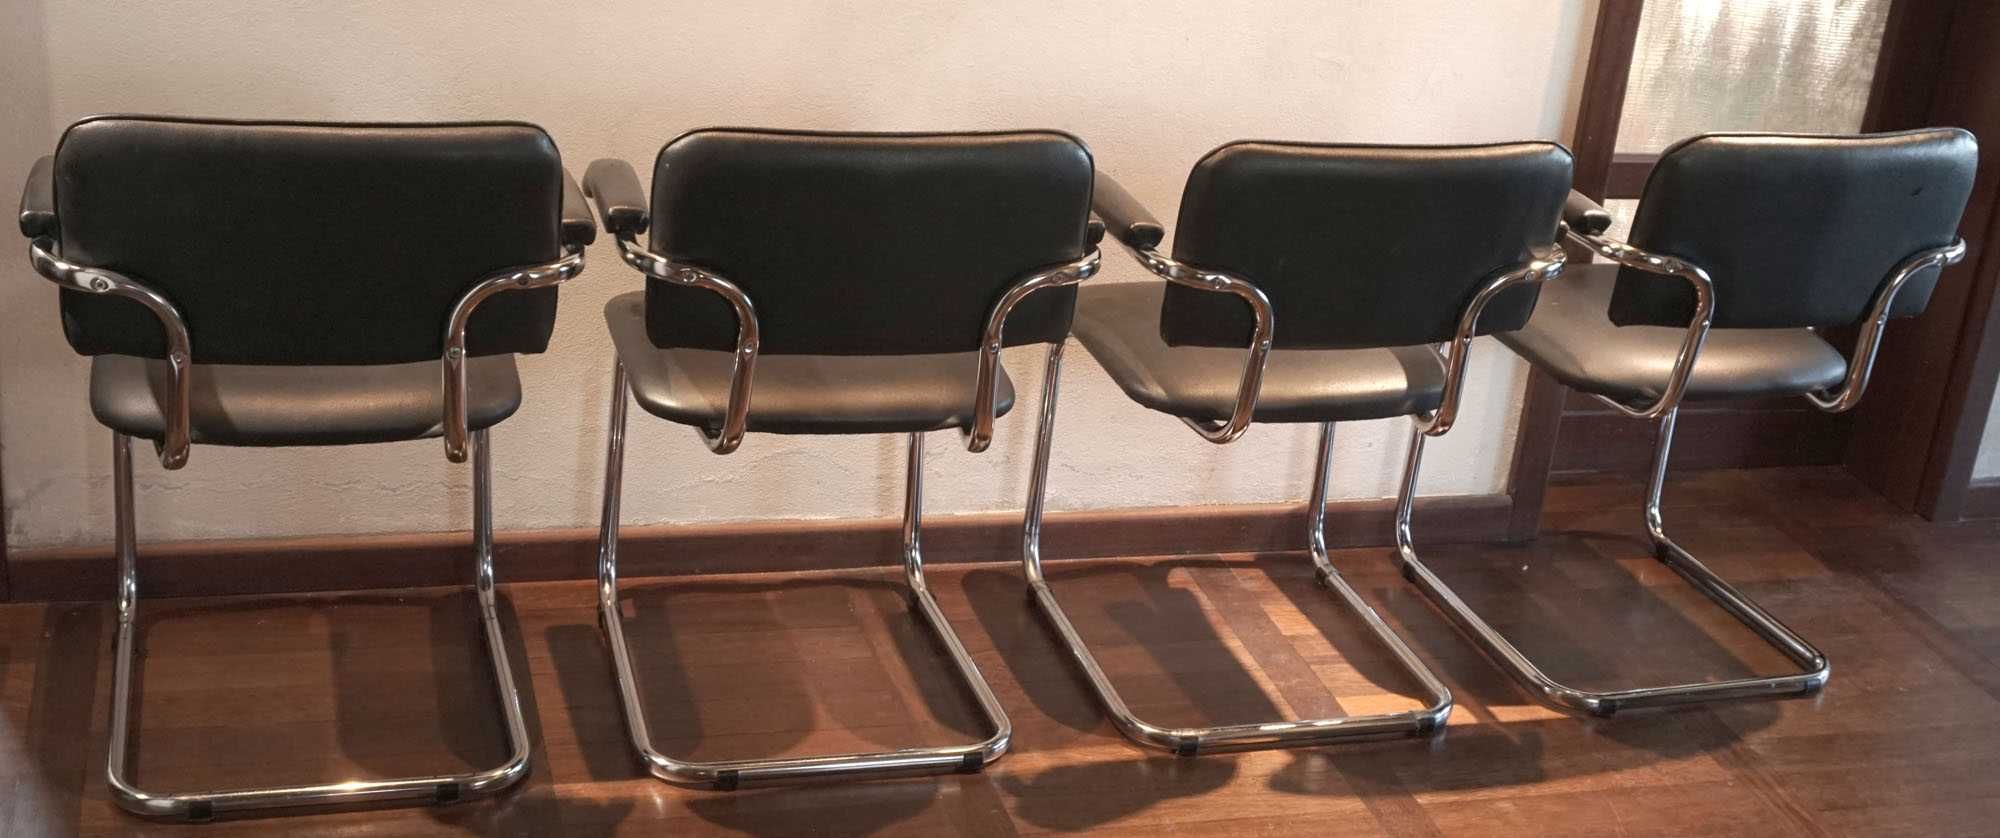 4 fotele / krzesła Nowy Styl chrom skóra biuro gabinet